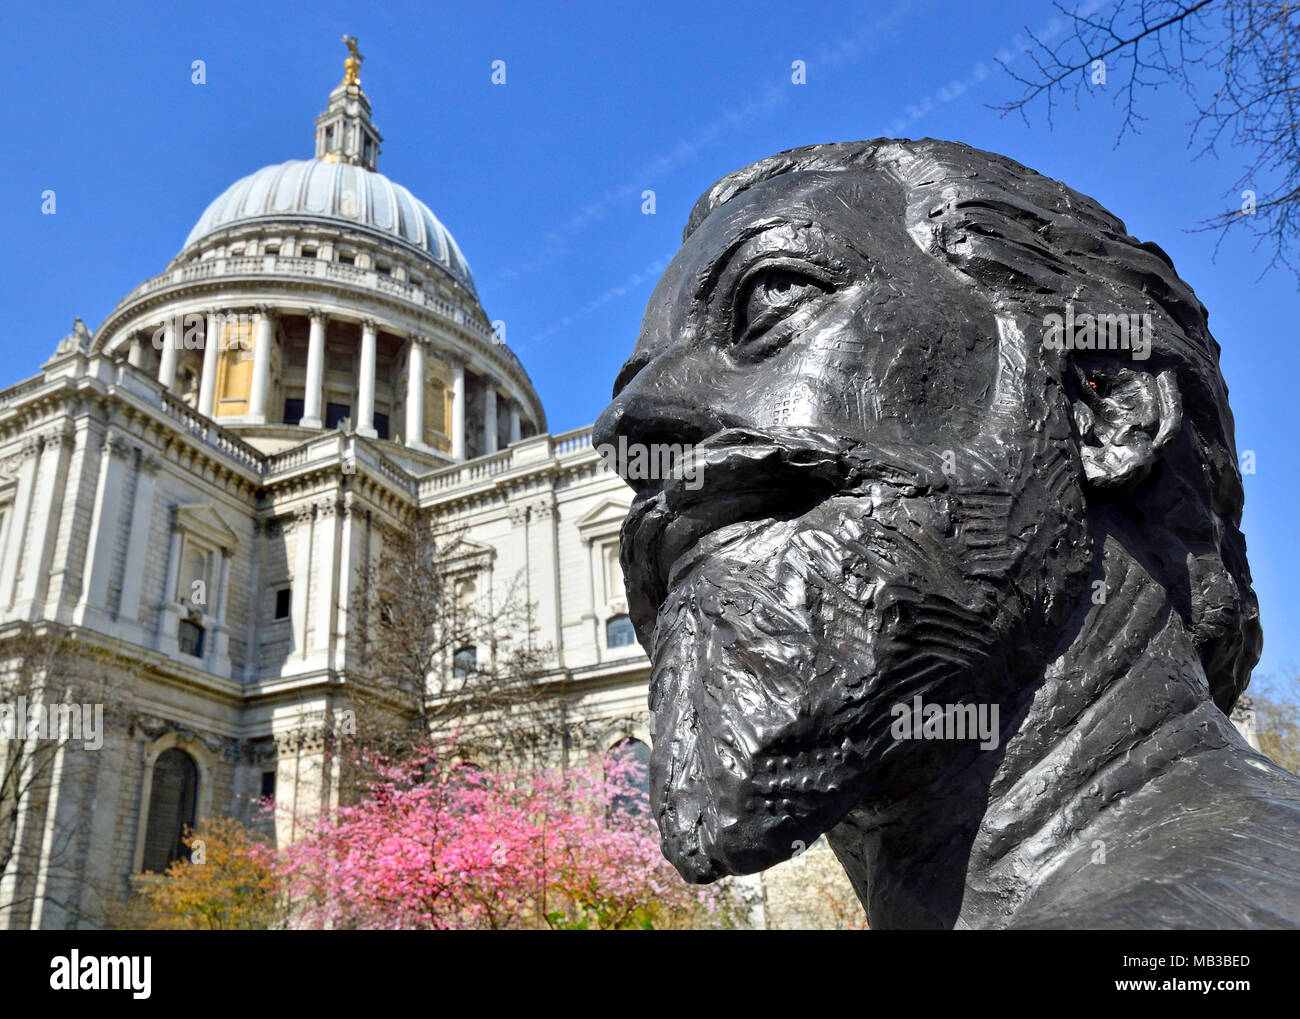 London, England, UK. Büste (von Nigel Boonham, 2012) von John Donne (1572-1631; Dichter und Dekan der St. Paul's Cathedral) im Festival... Stockfoto